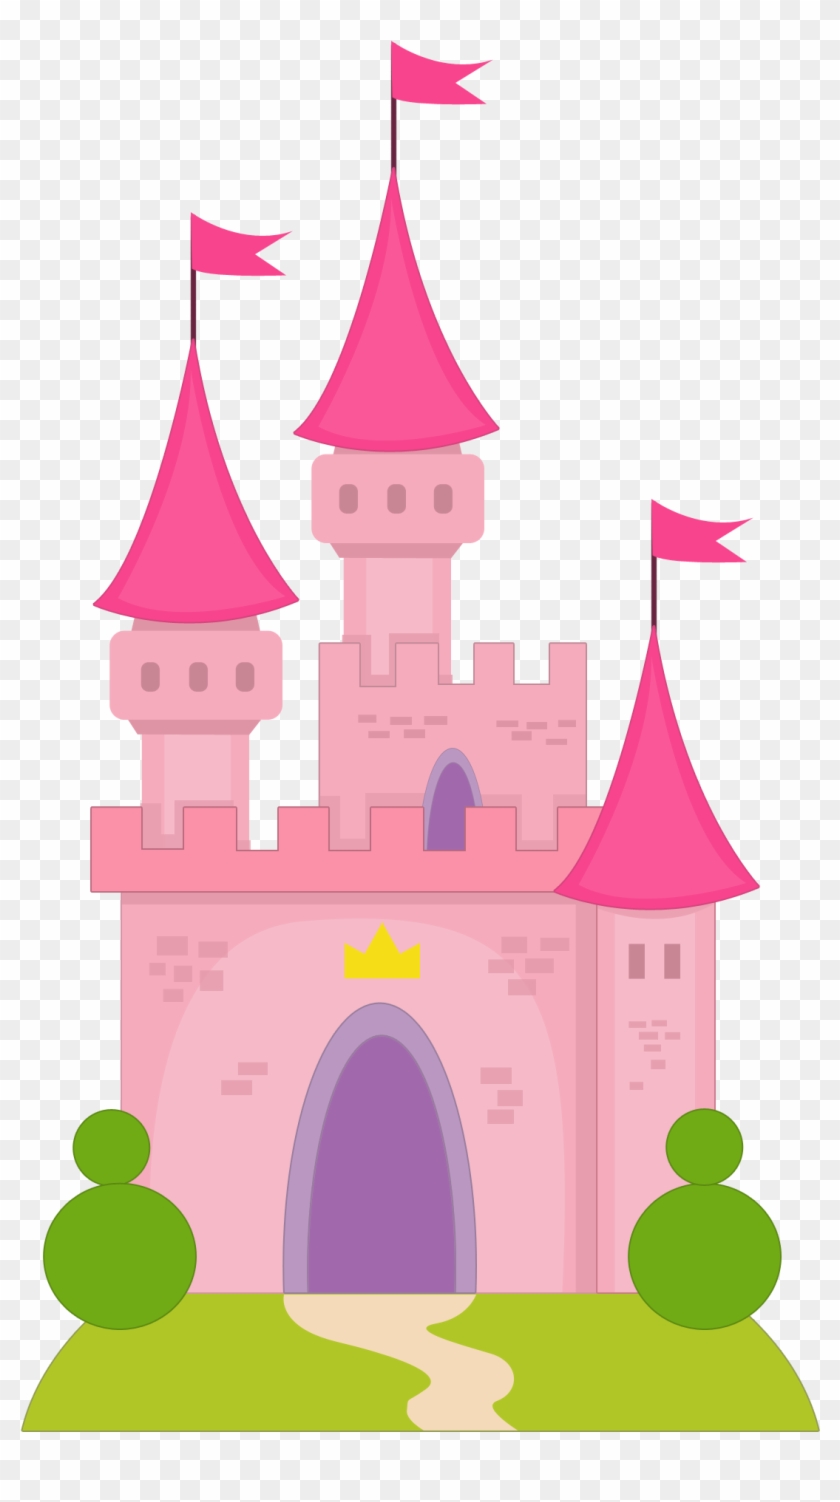 Princesas E Príncipes - Castillo De Princesas Dibujo #250146